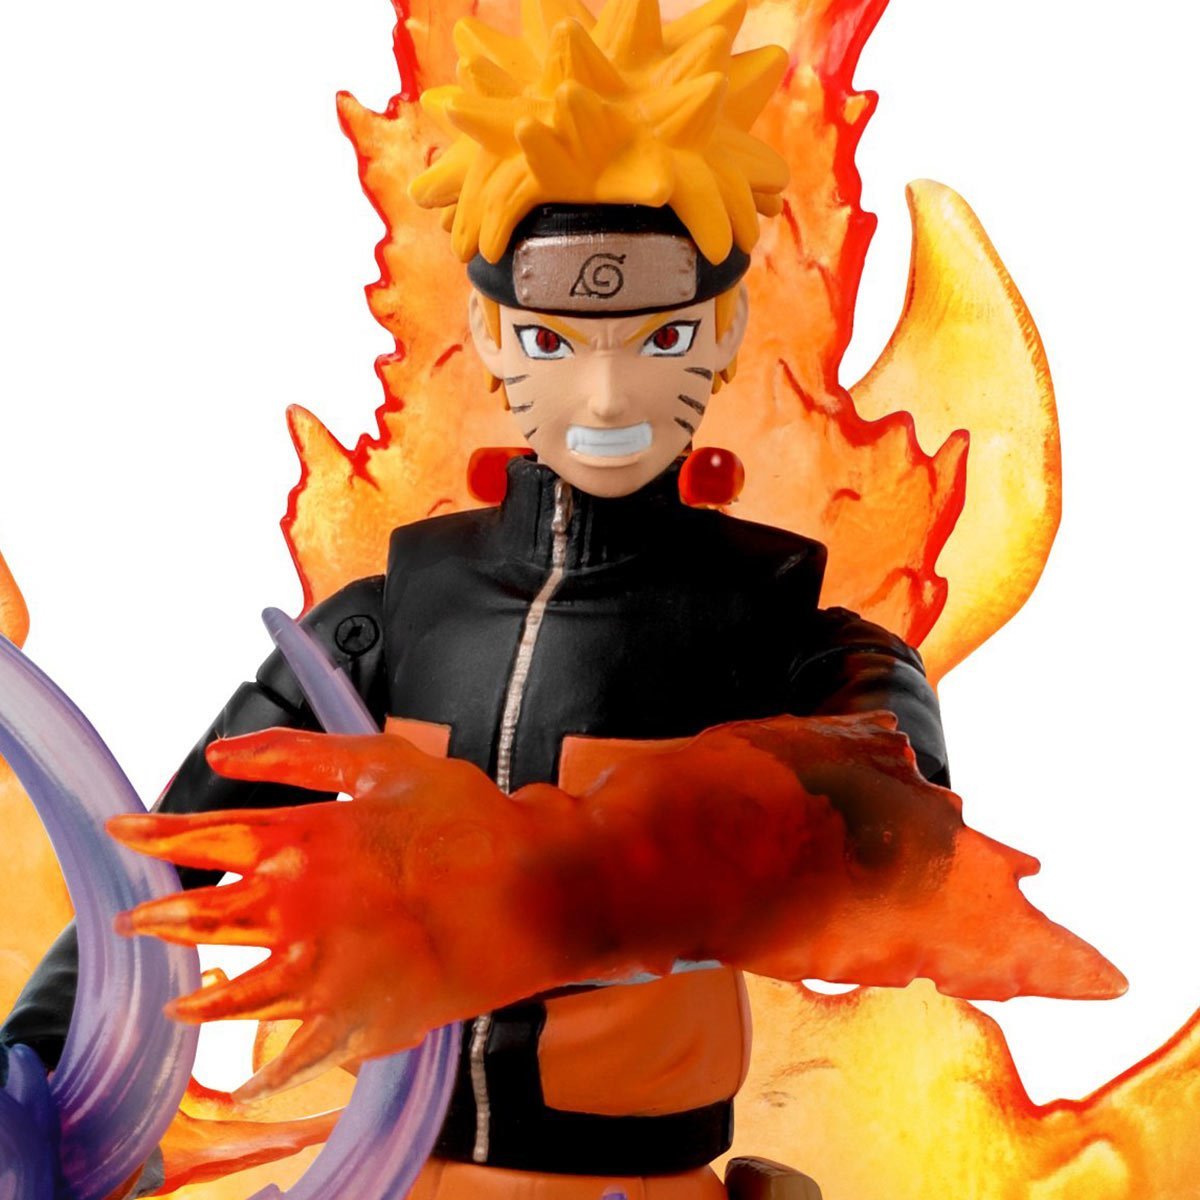 Bandai - Figura de Ação Anime Heroes Naruto Shippuden - Namikaze